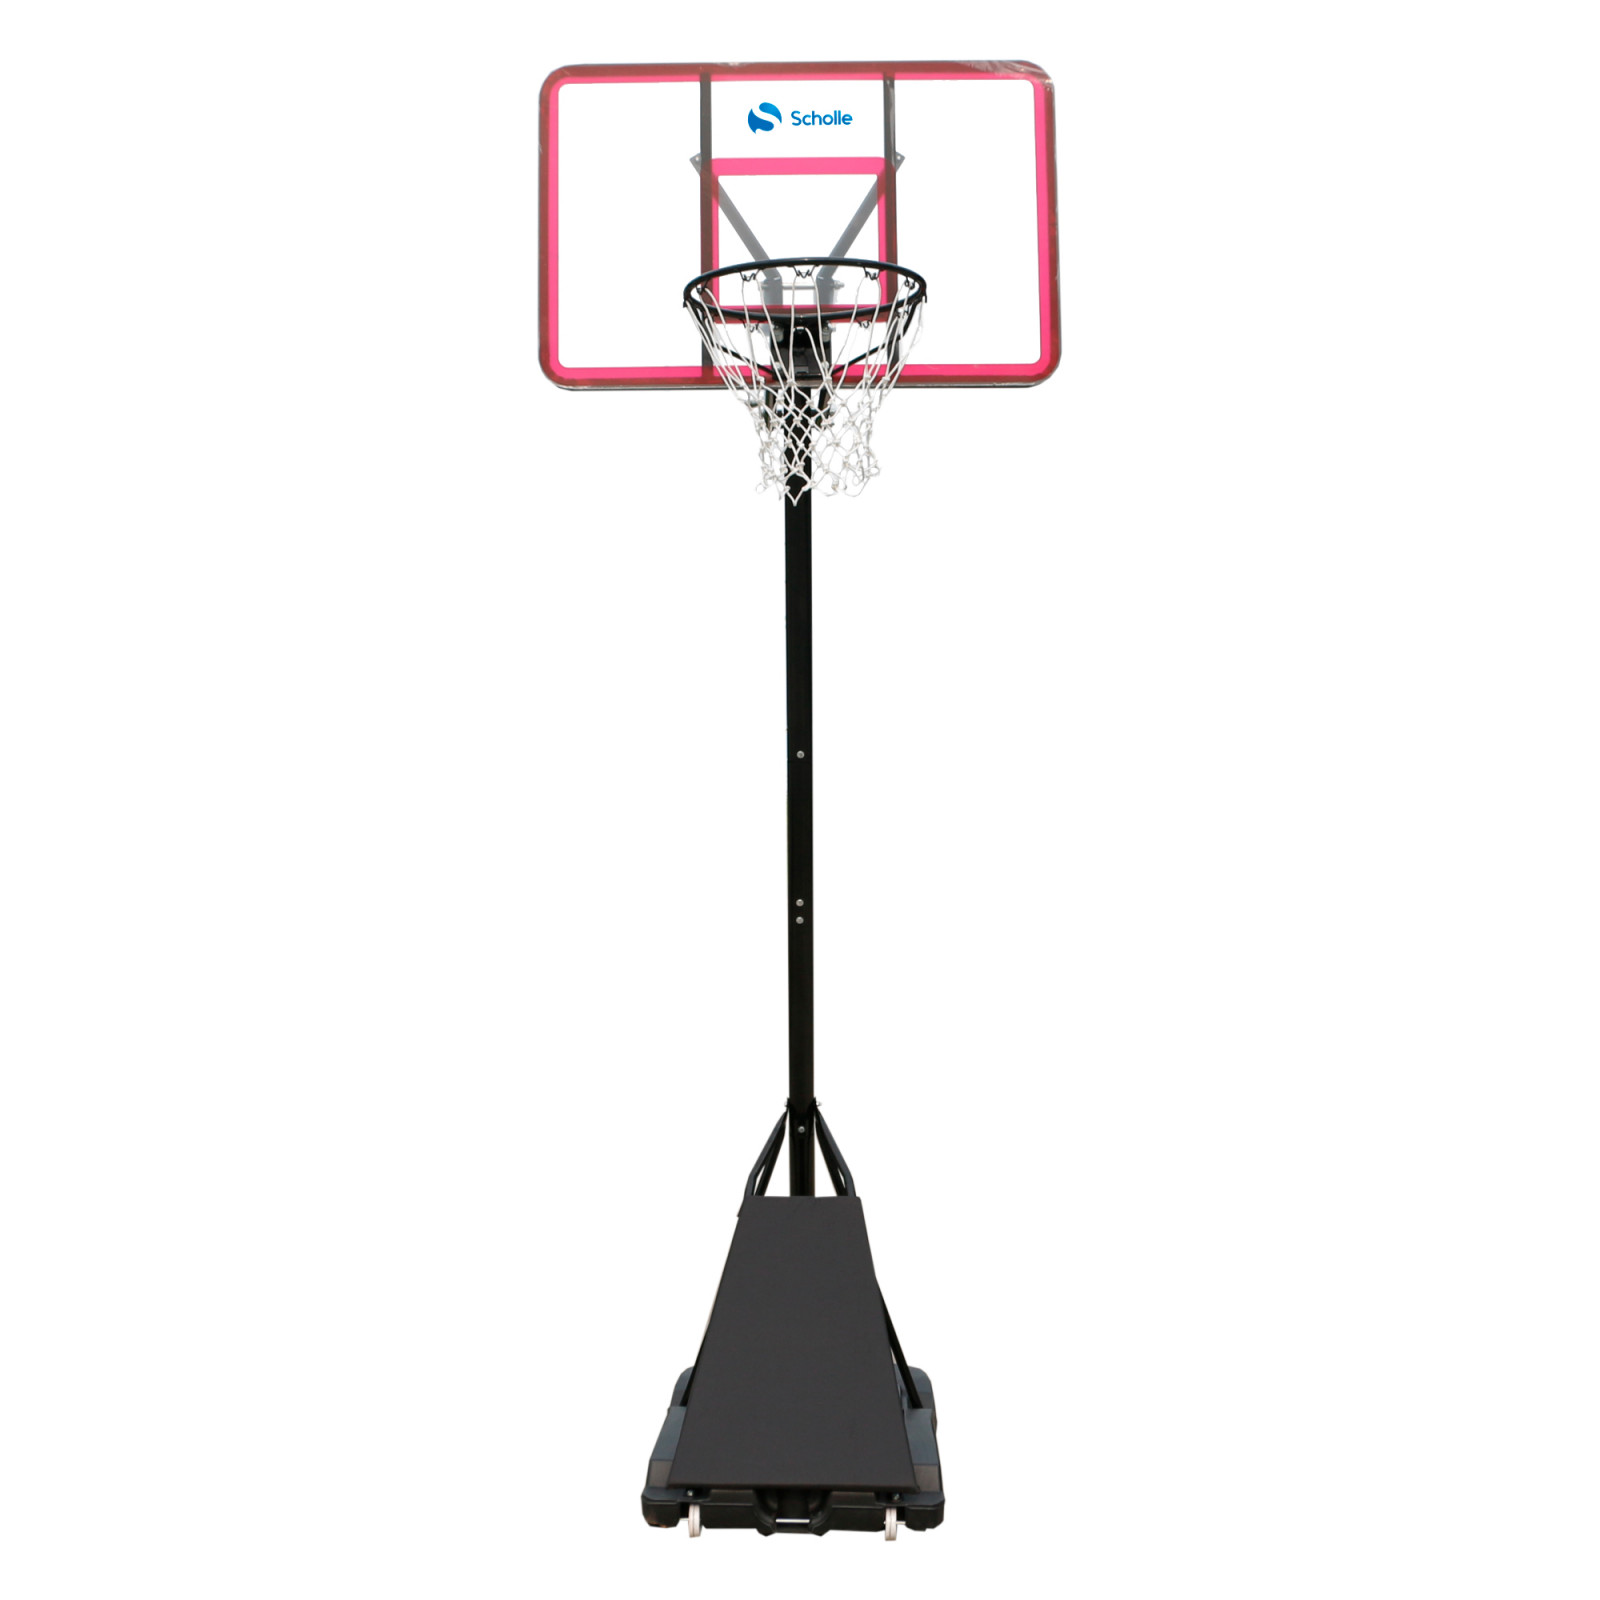 Мобильная баскетбольная стойка Scholle S526 1600_1600